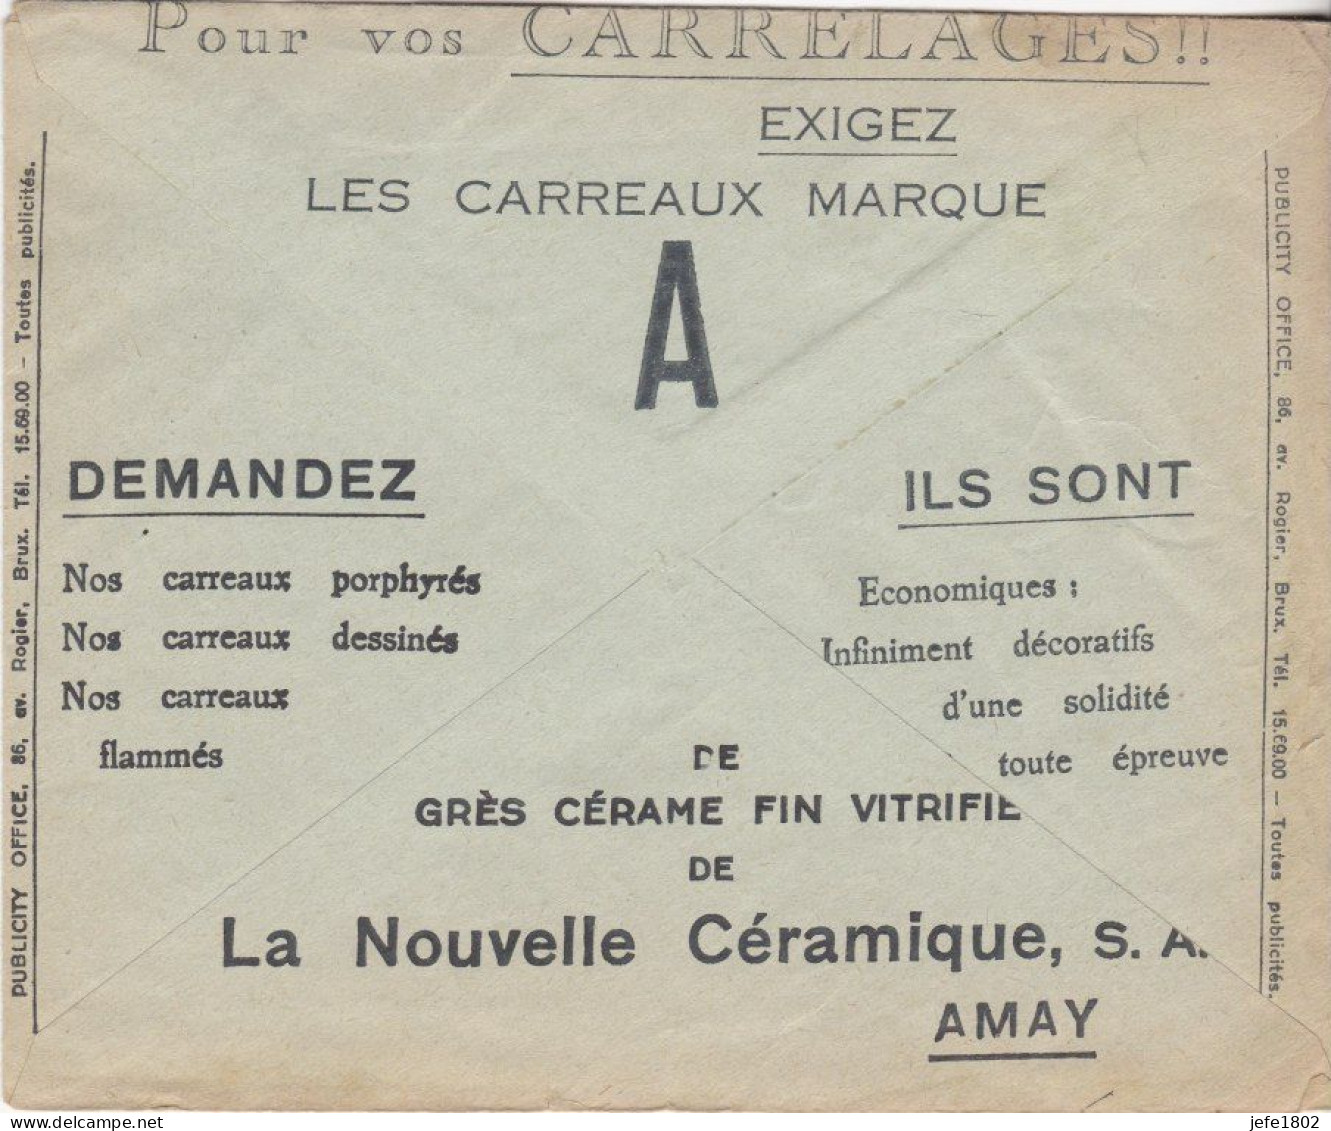 La Nouvelle Céramique - Carrelages - Porphyrés - Flammés - Décoratifs - Cartes Postales 1934-1951